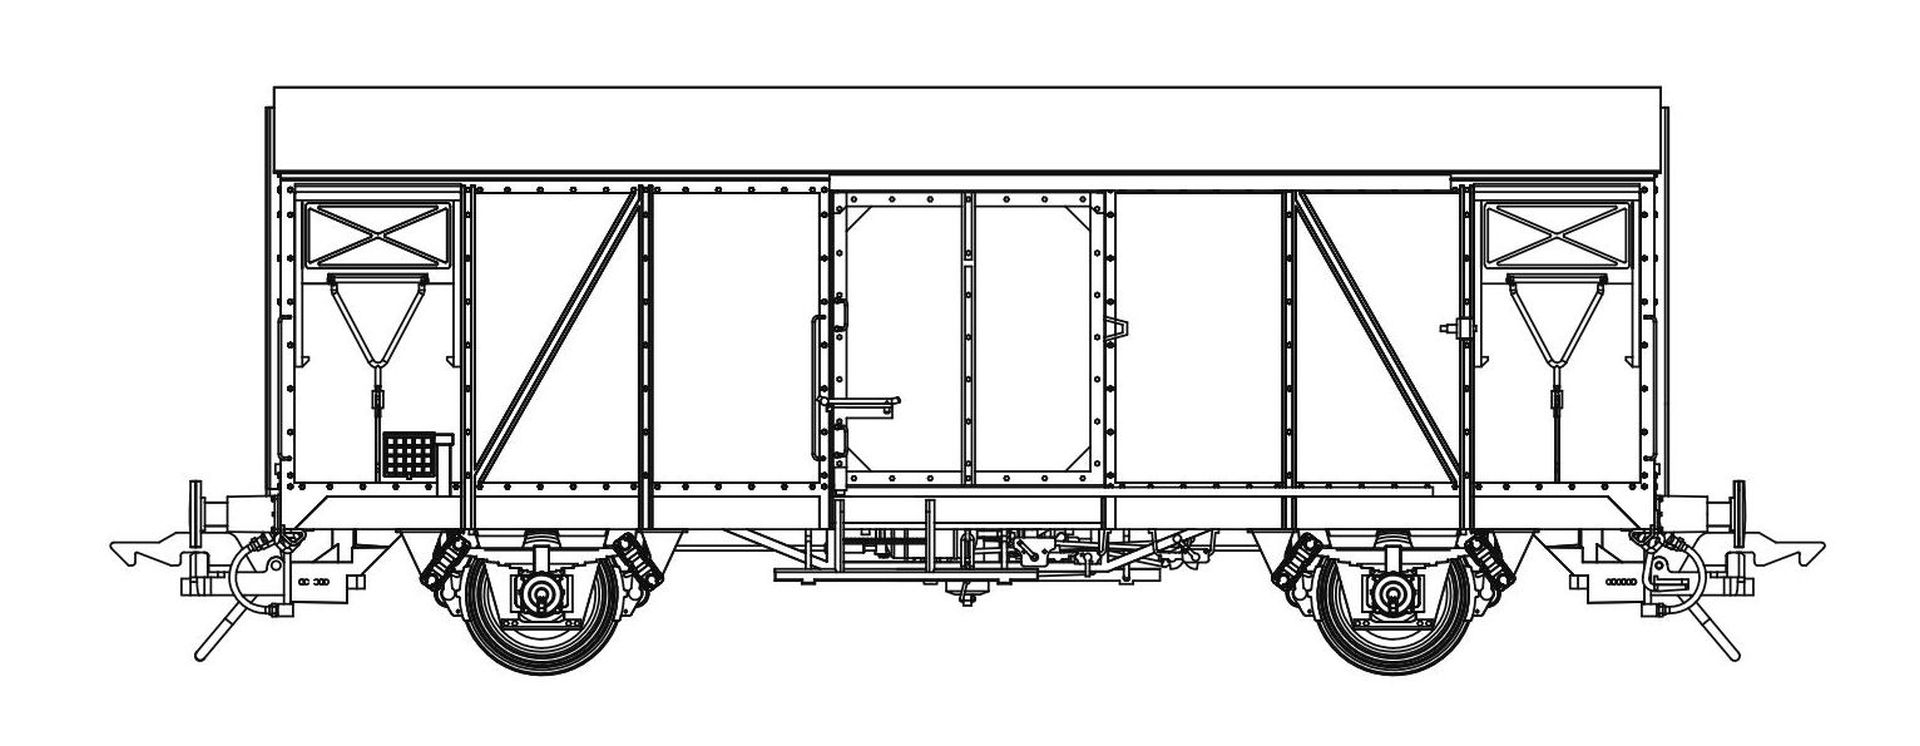 Lenz 42234-07 - Bahndienstwagen Gls 205, DB, Ep.IV, 945 5 724-3